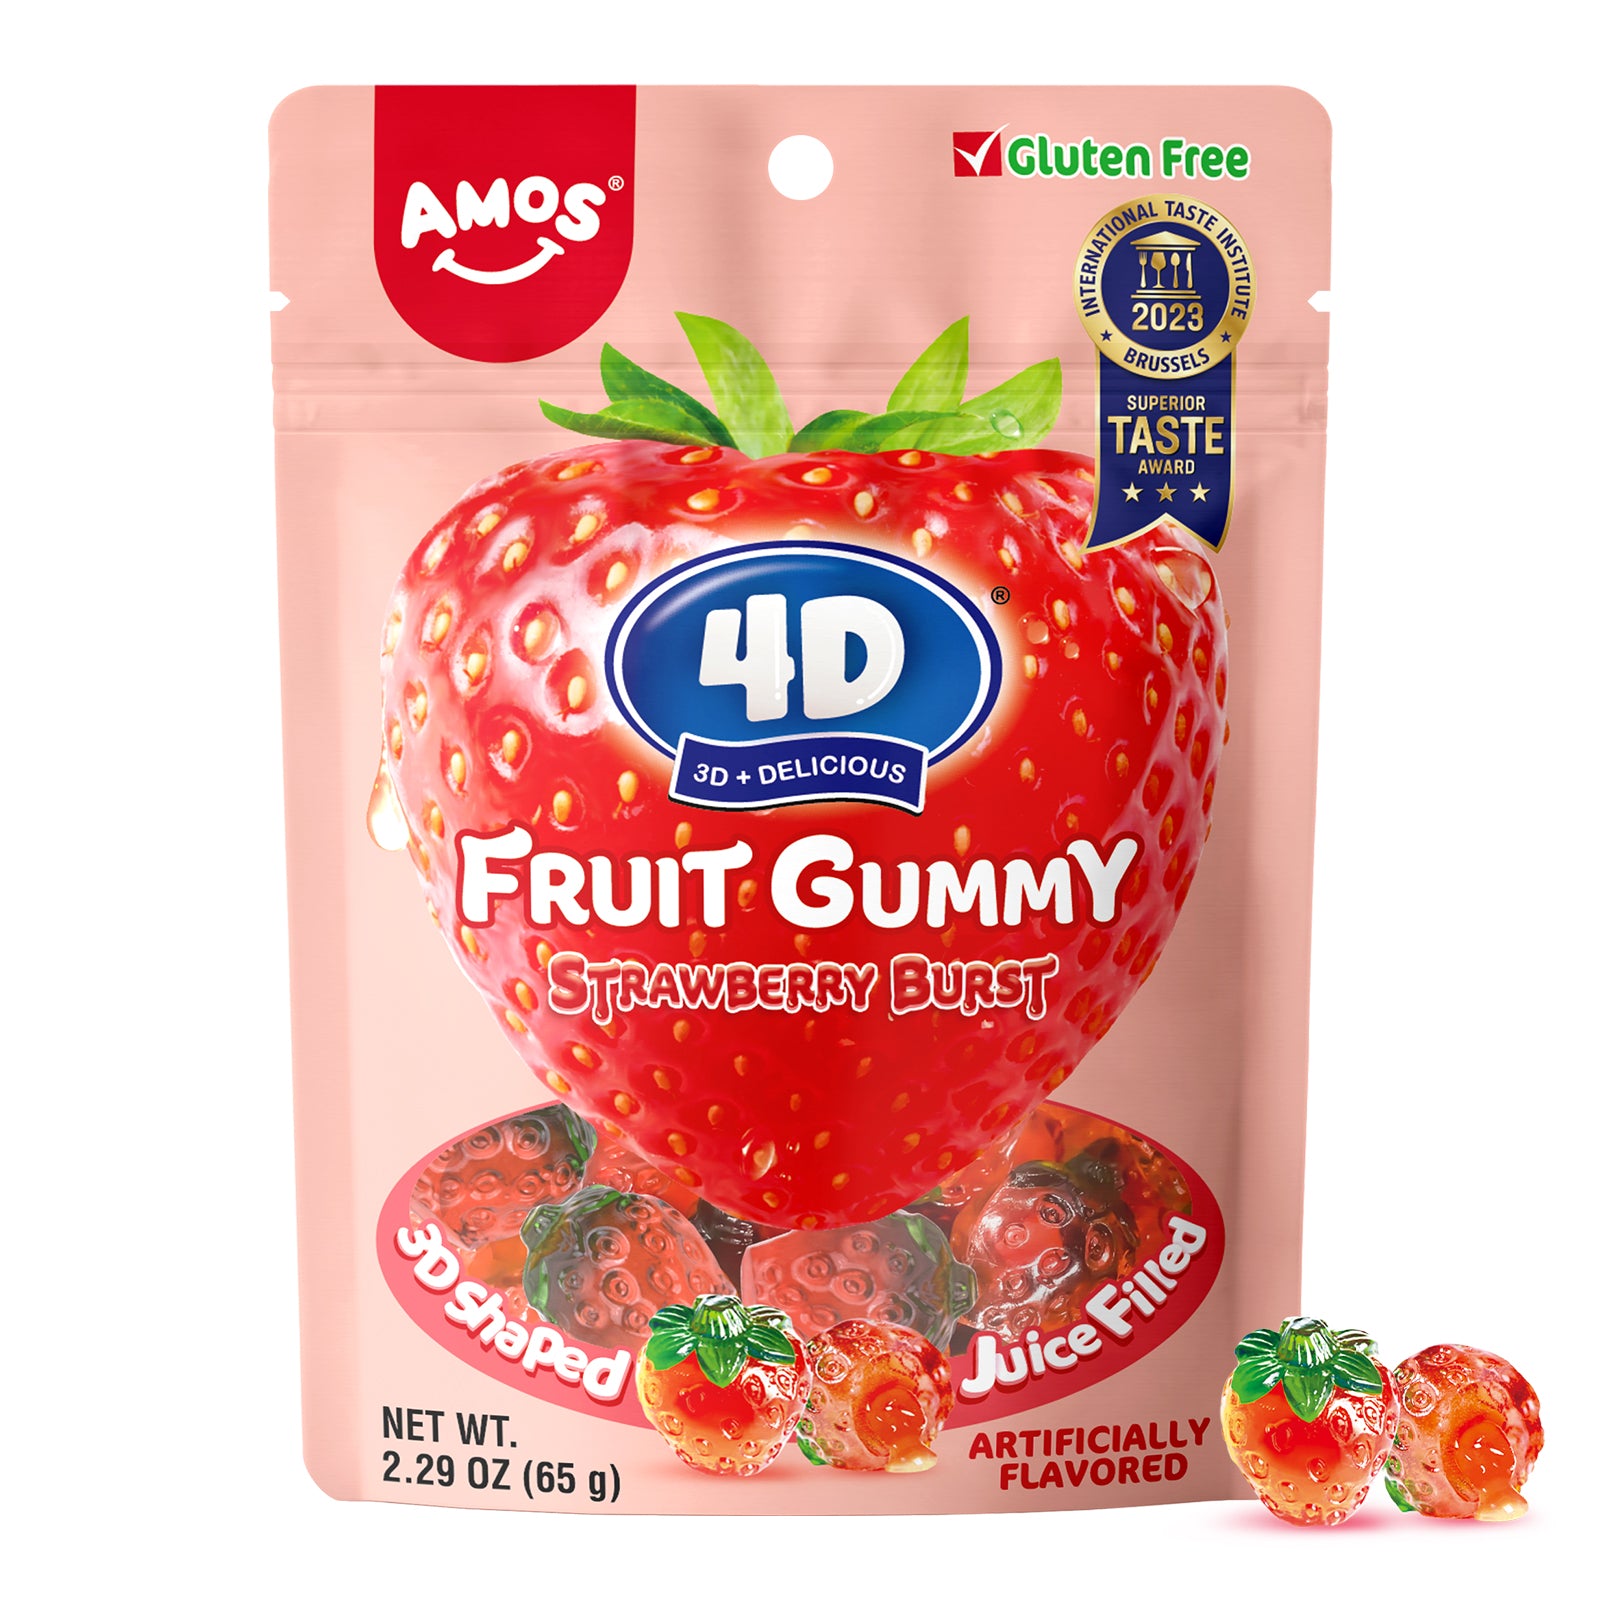 4D Fruit Gummy - Strawberry Burst Juice Filled